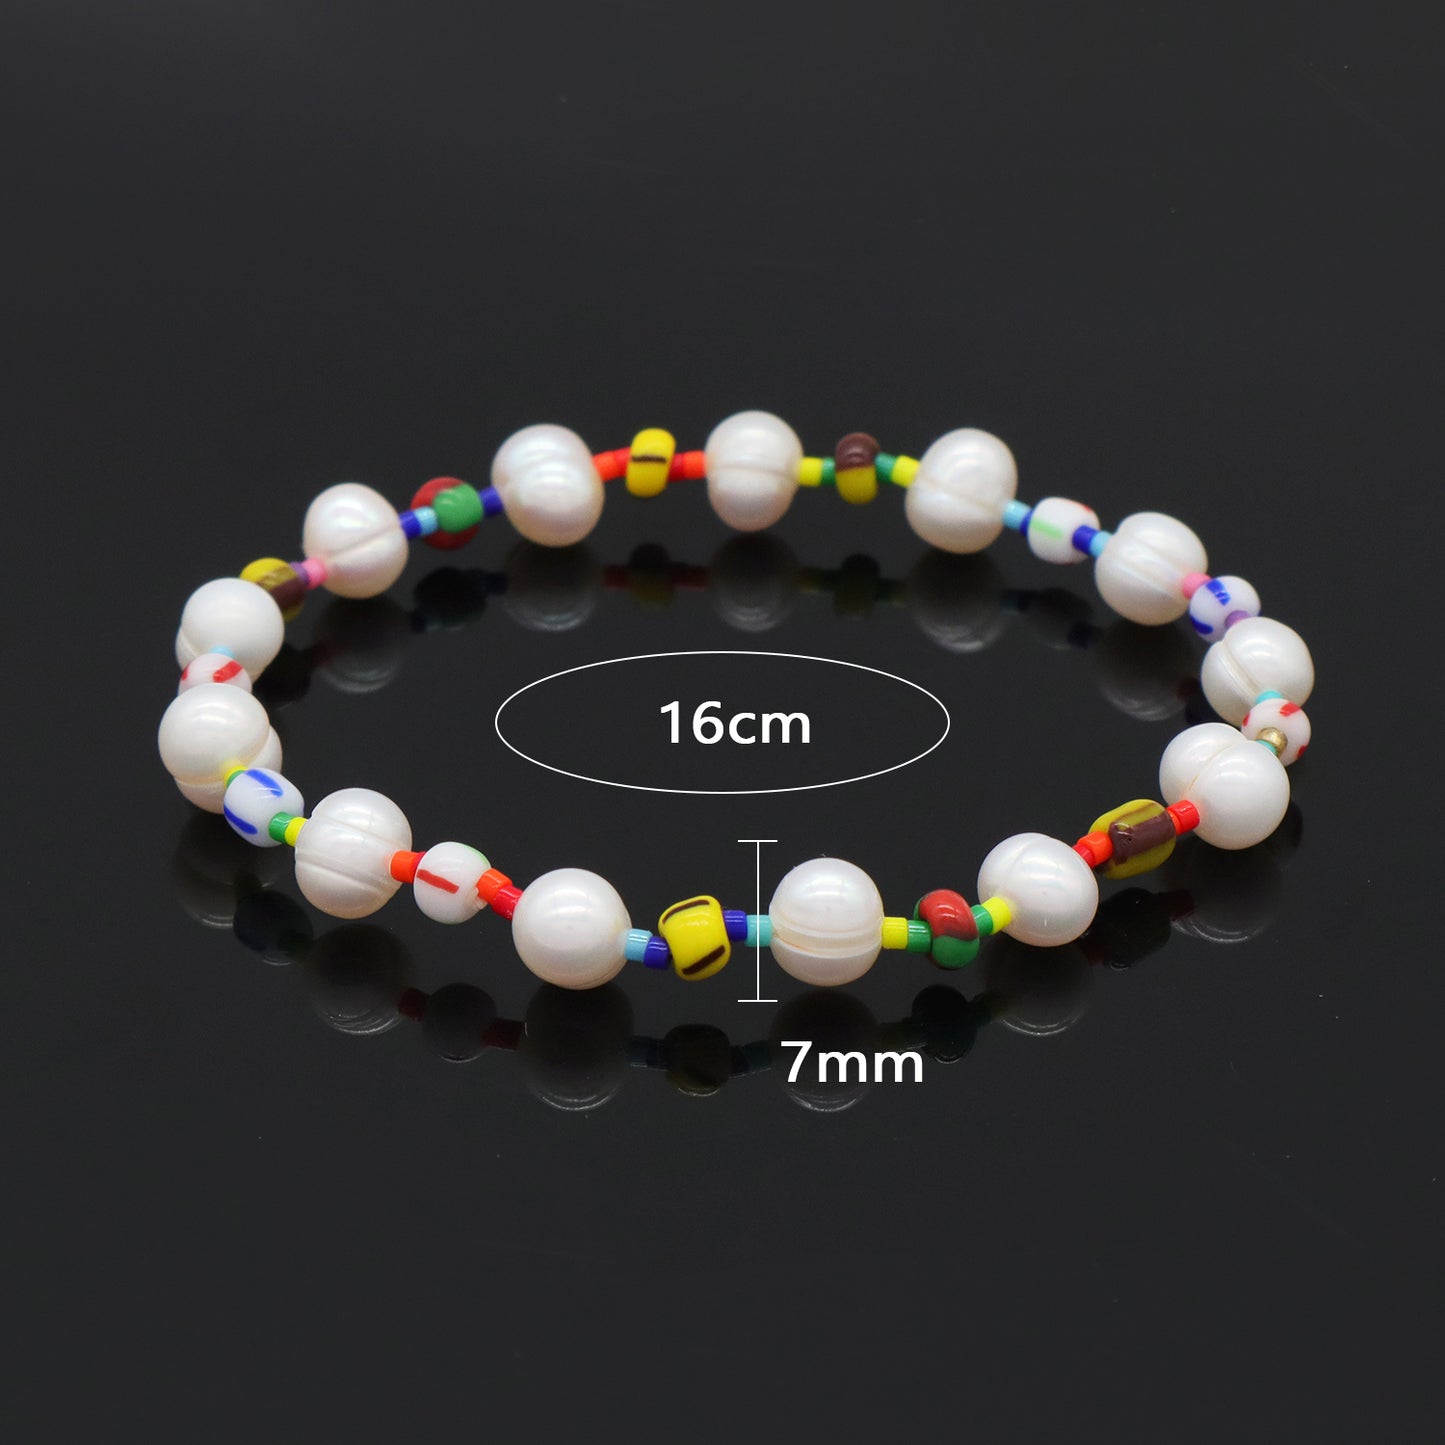 Newest Wholesale custom pearl beads bracelets jewelry Handmade fresh water pearl beaded bracelet For women girls kids